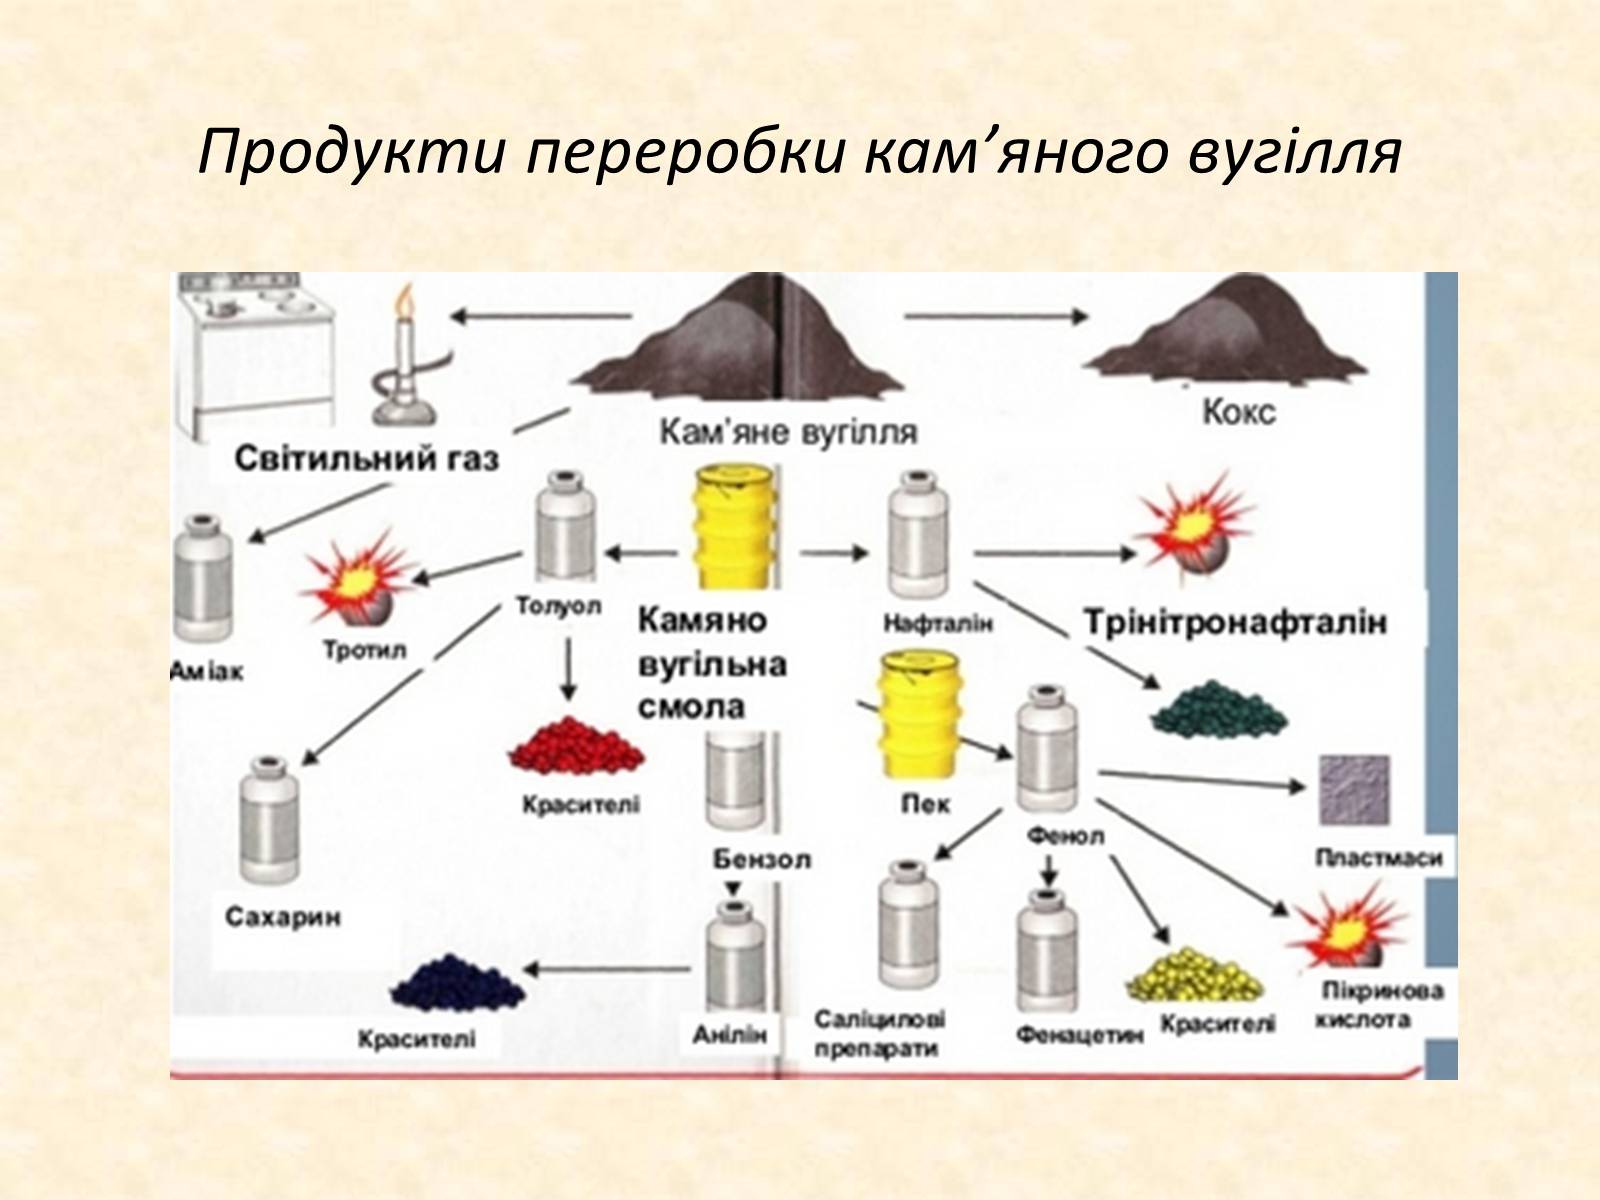 Каменный уголь реакции. Продукты переработки каменного угля таблица. Схема переработки каменного угля. Продукты переработки каменного угля схема. Основные продукты переработки каменного угля.